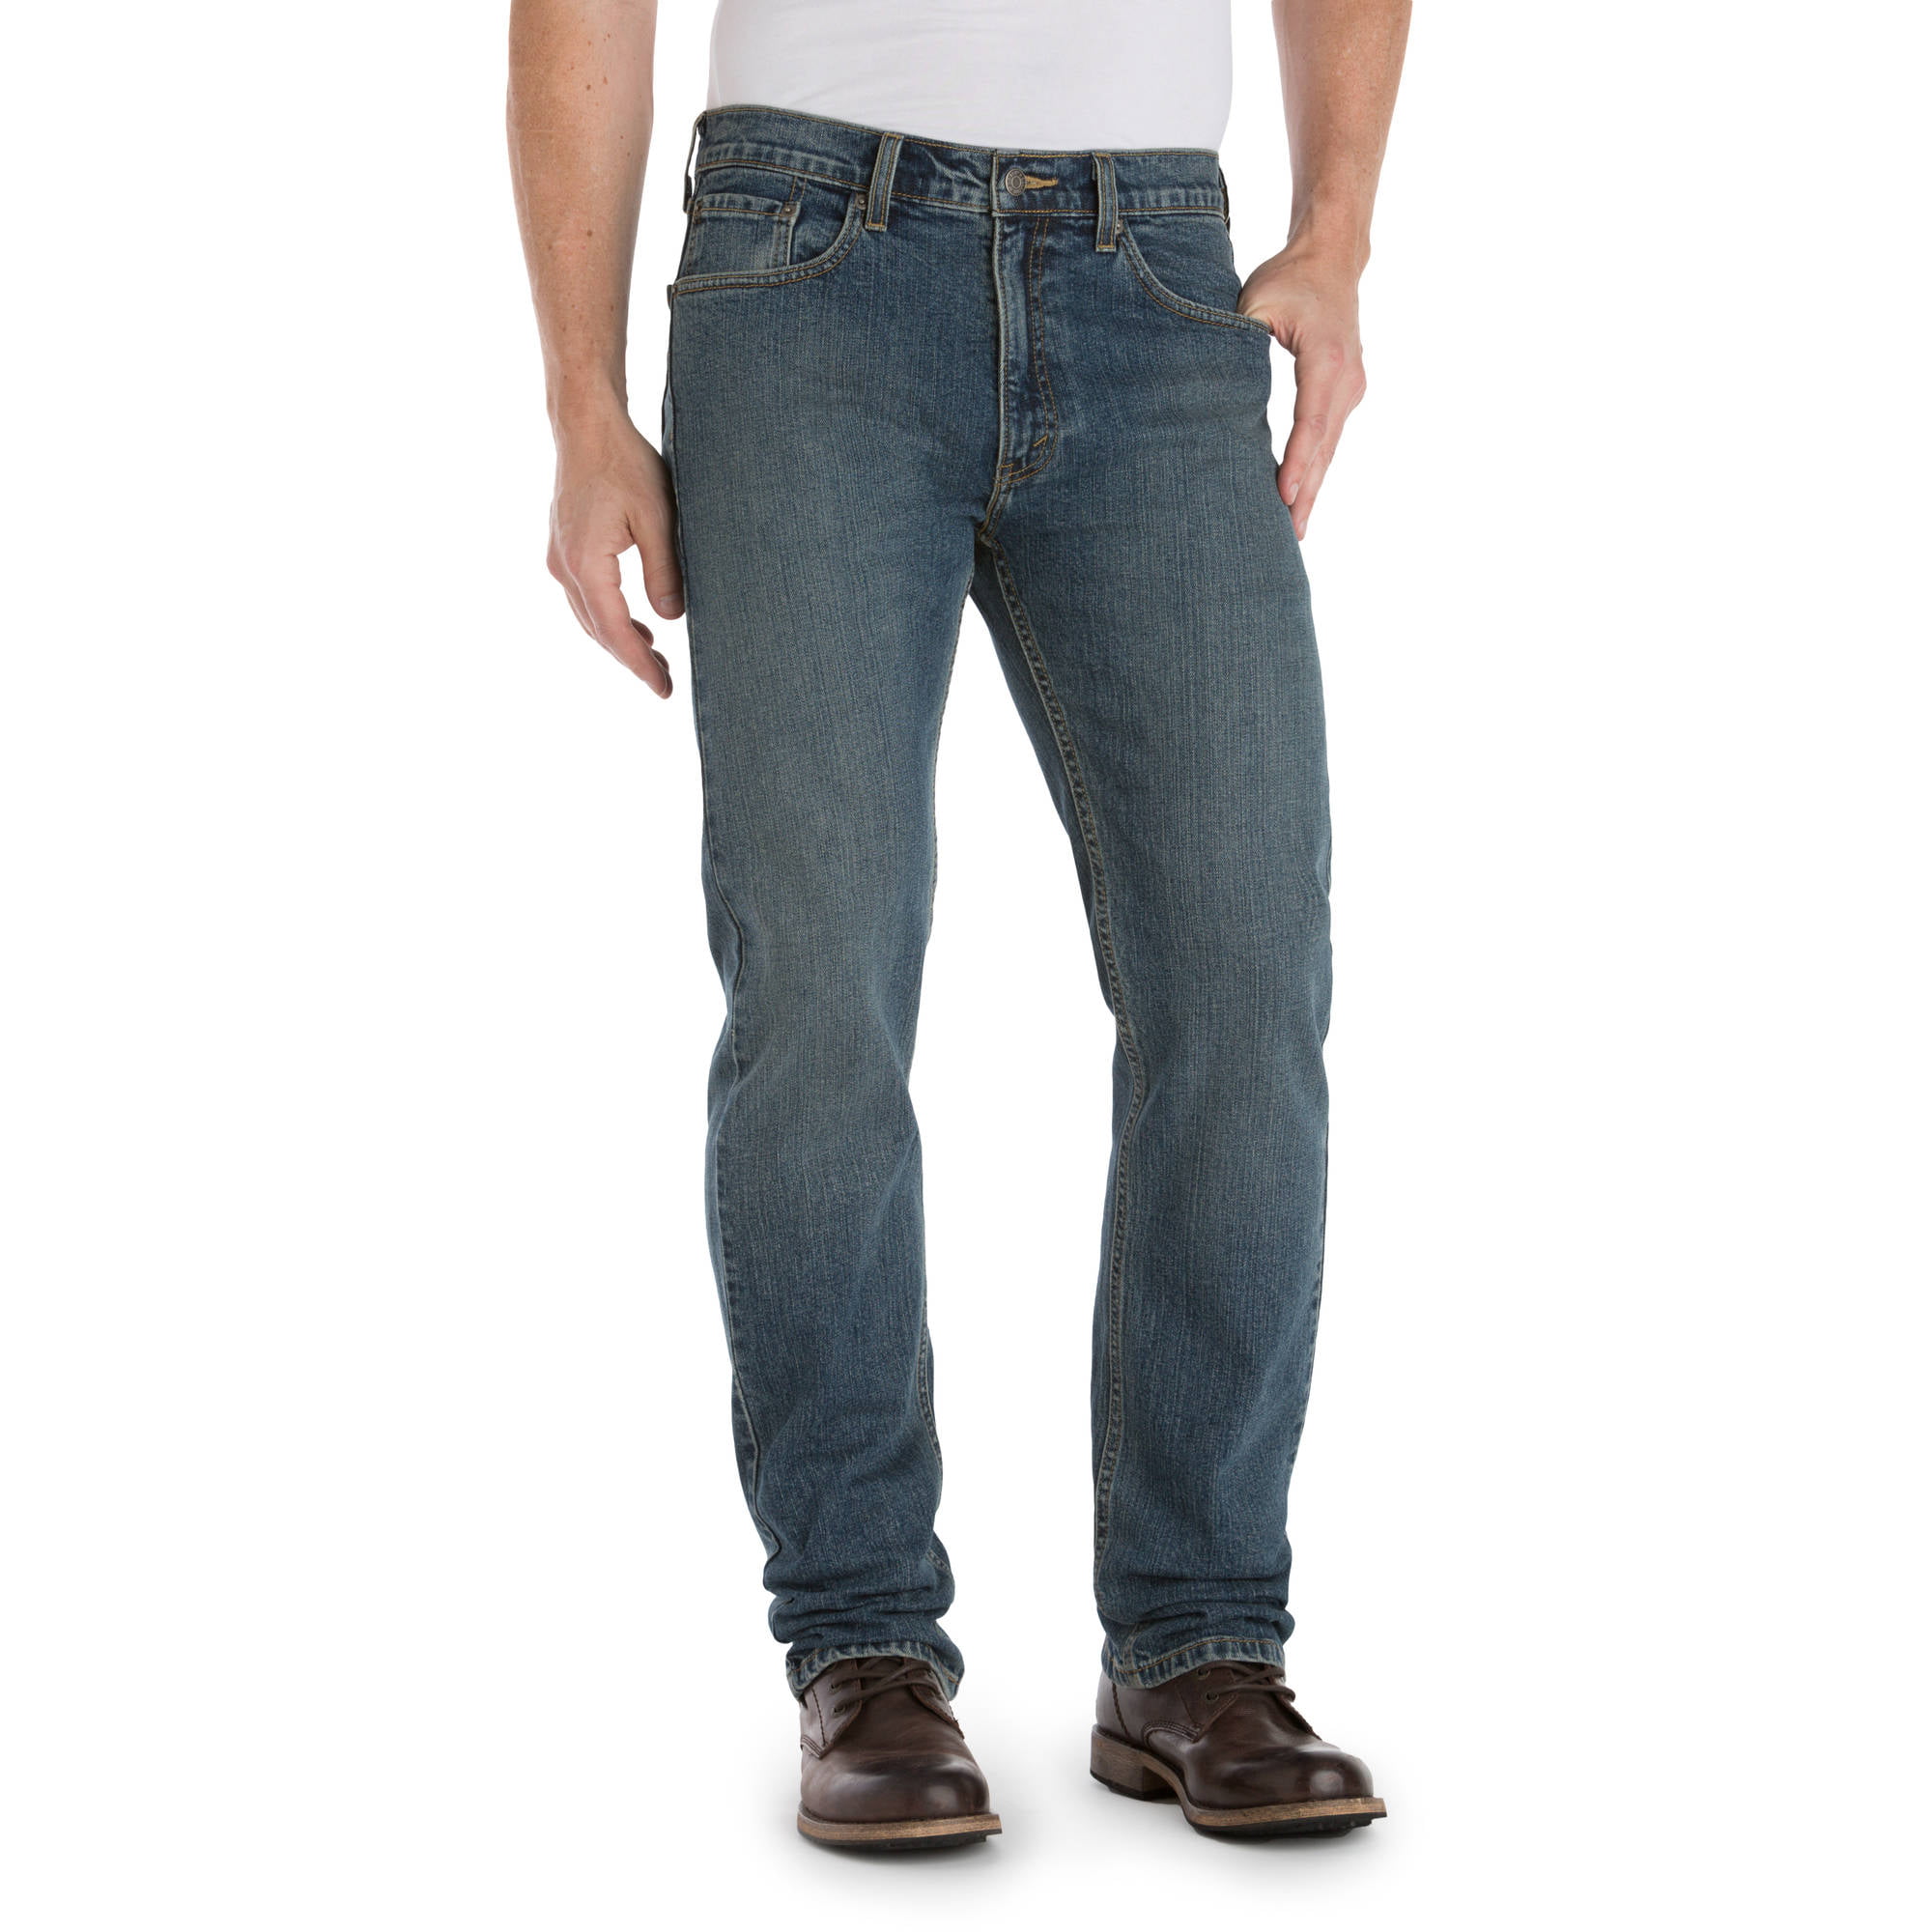 Big Men's Premium Comfort Regular Fit Jeans - Walmart.com